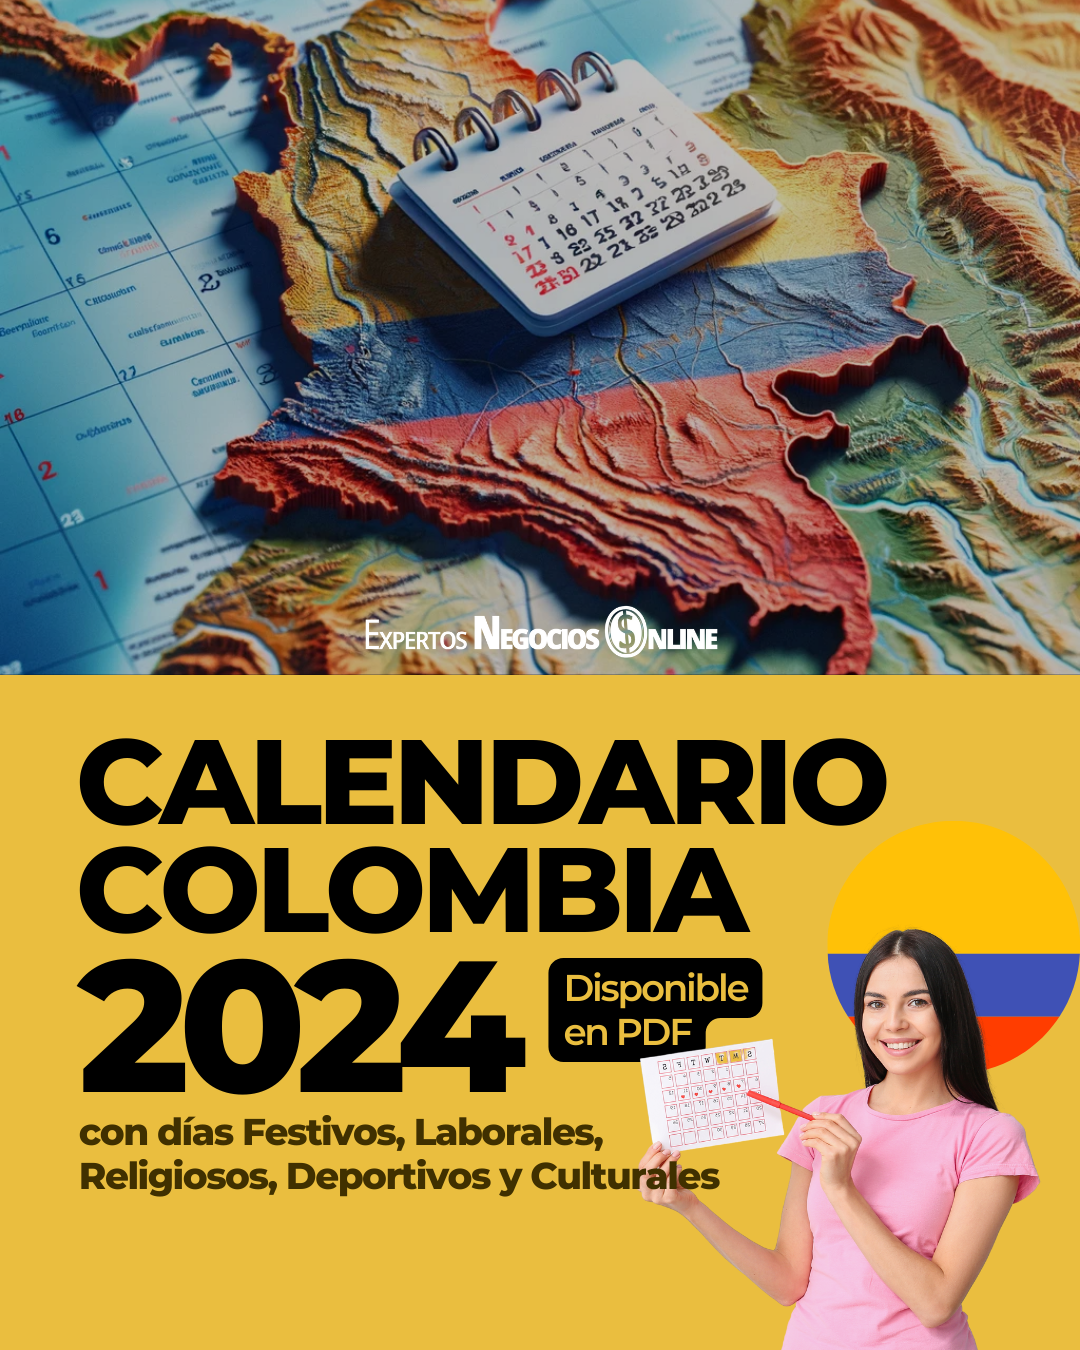 Calendario 2024 Colombia con Festivos PDF - Comercial con fechas especiales